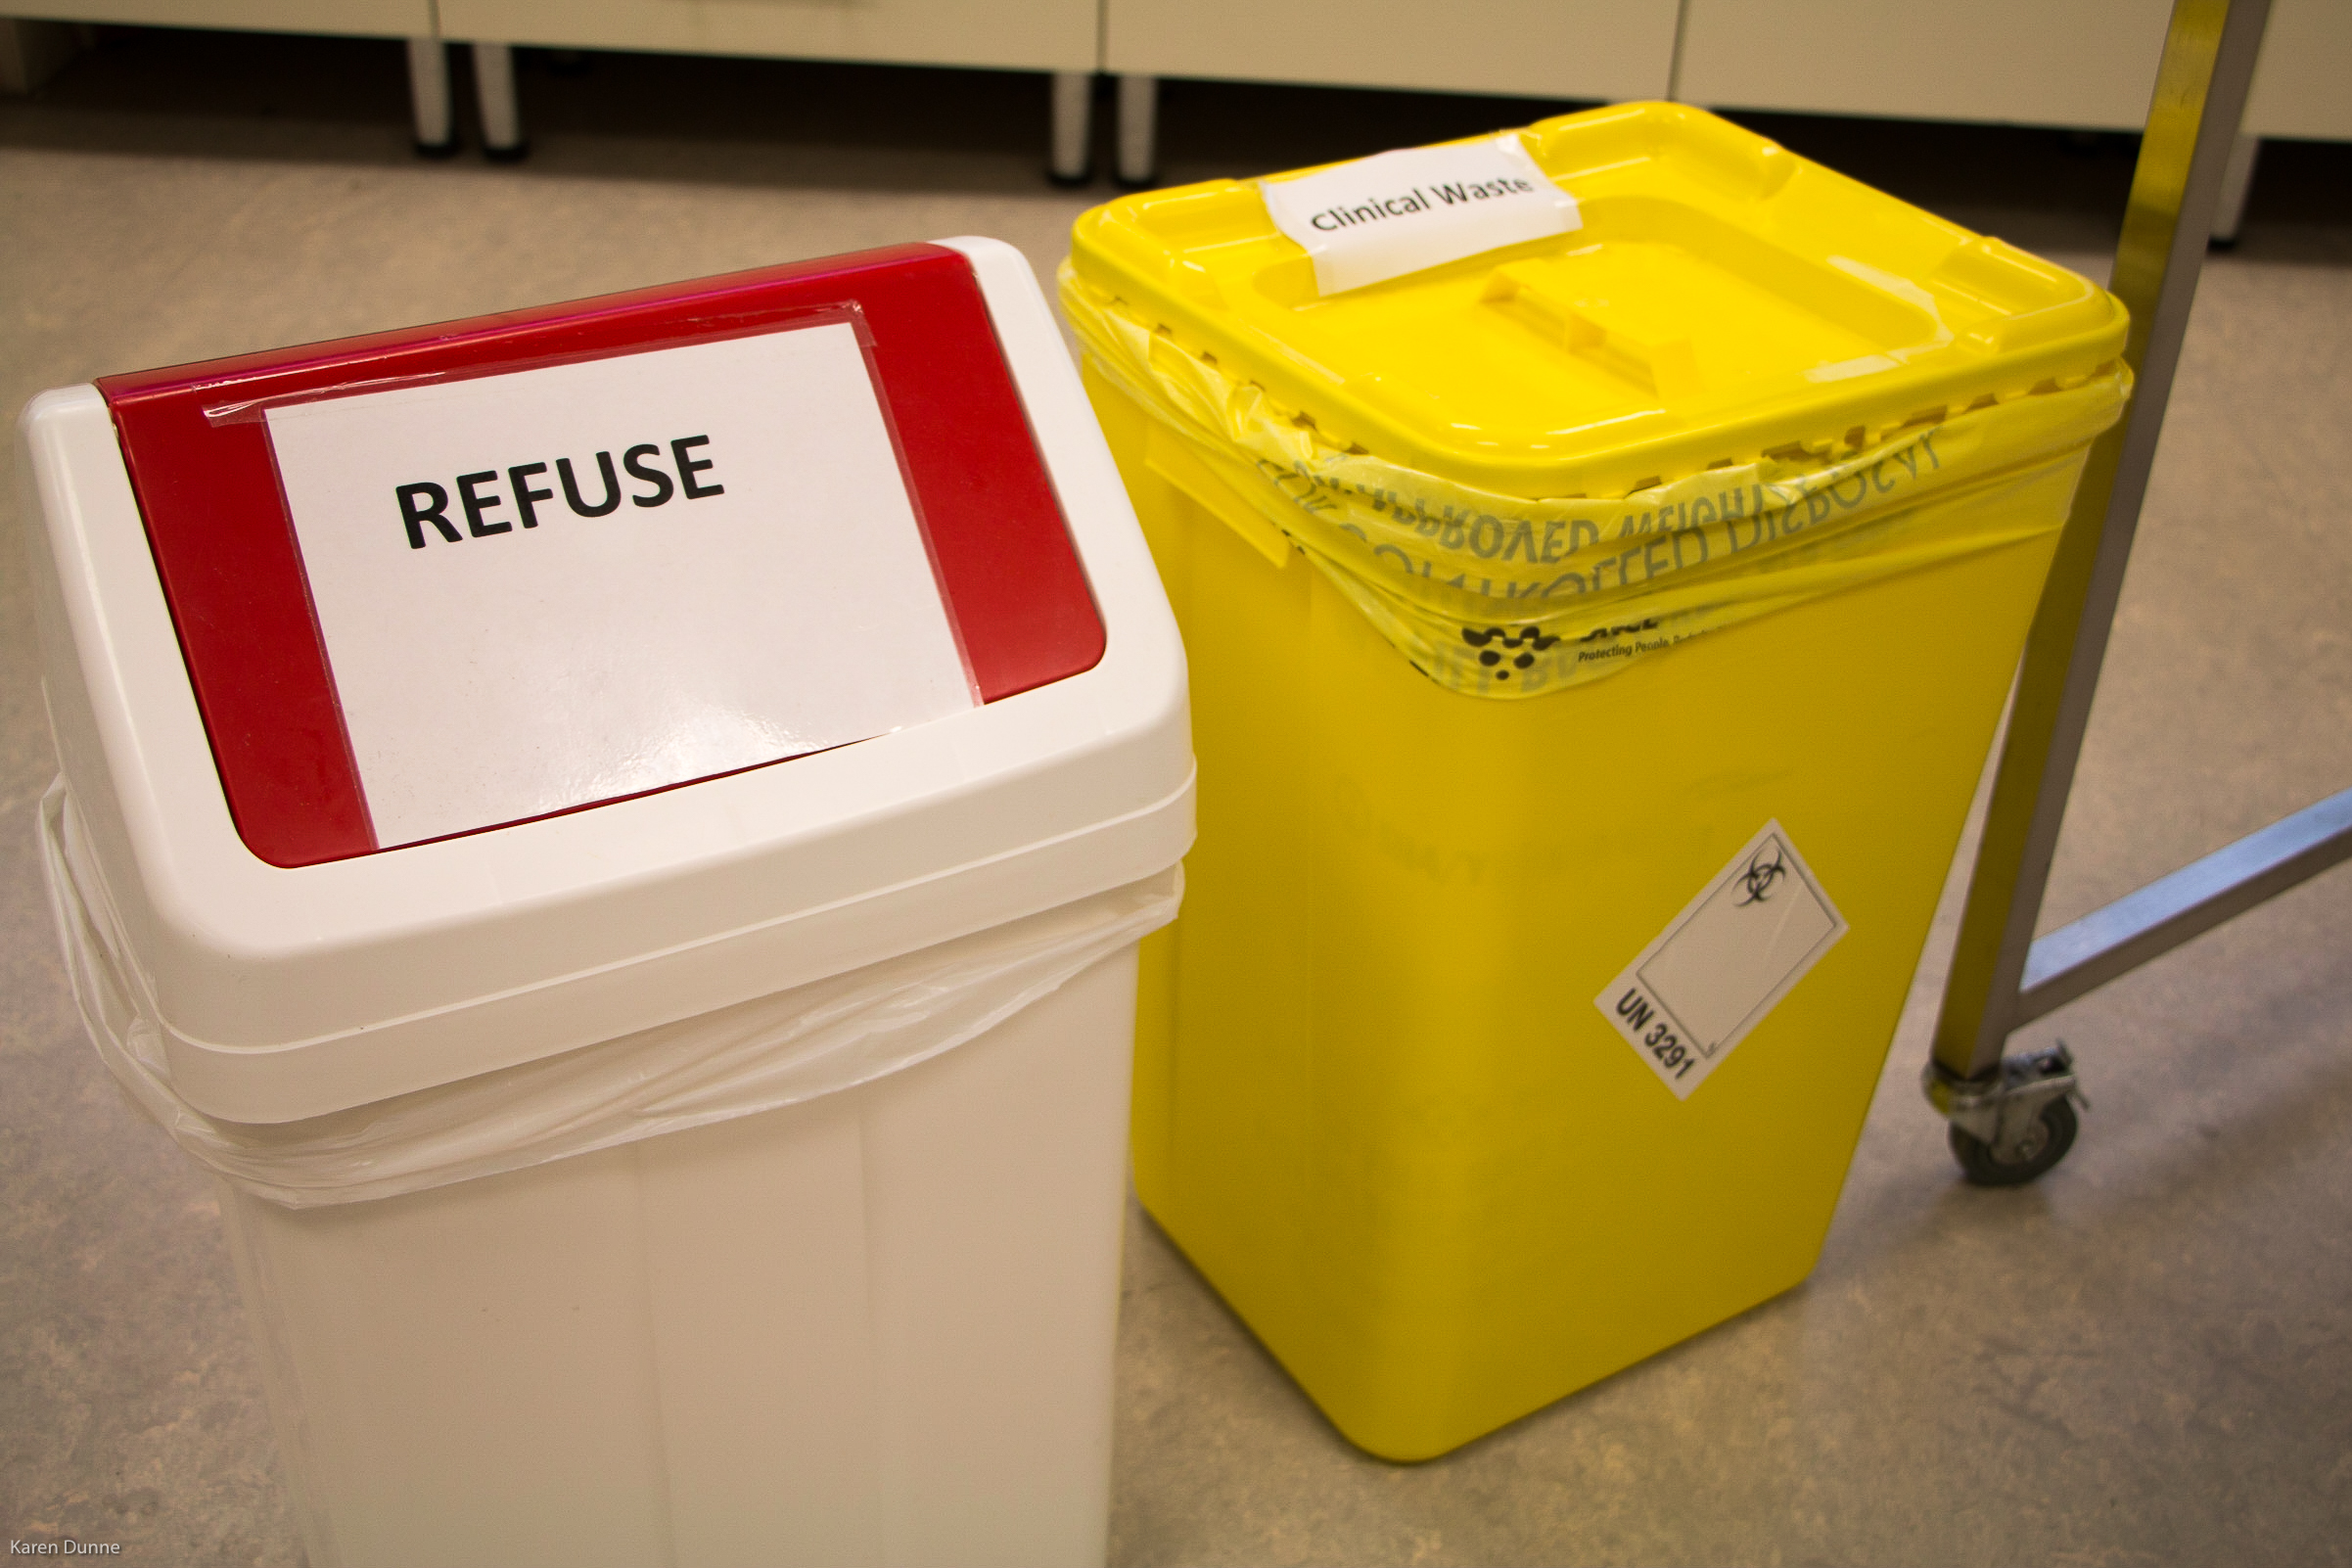 Refuse & rigid clinical waste bins